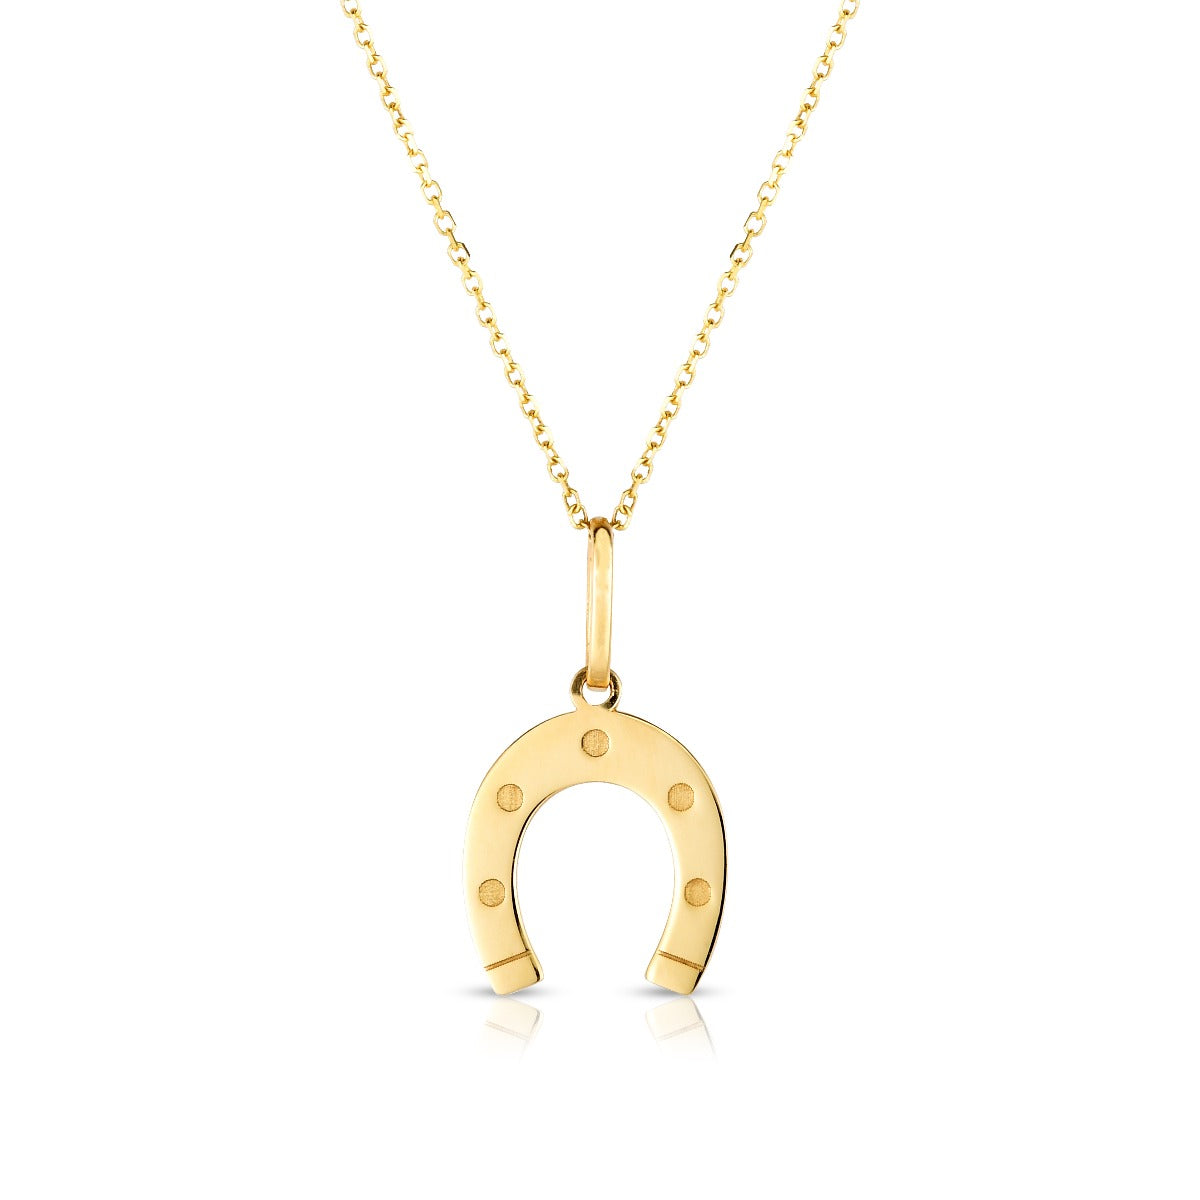 14K Gold Polished Horseshoe Charm Pendant Necklace